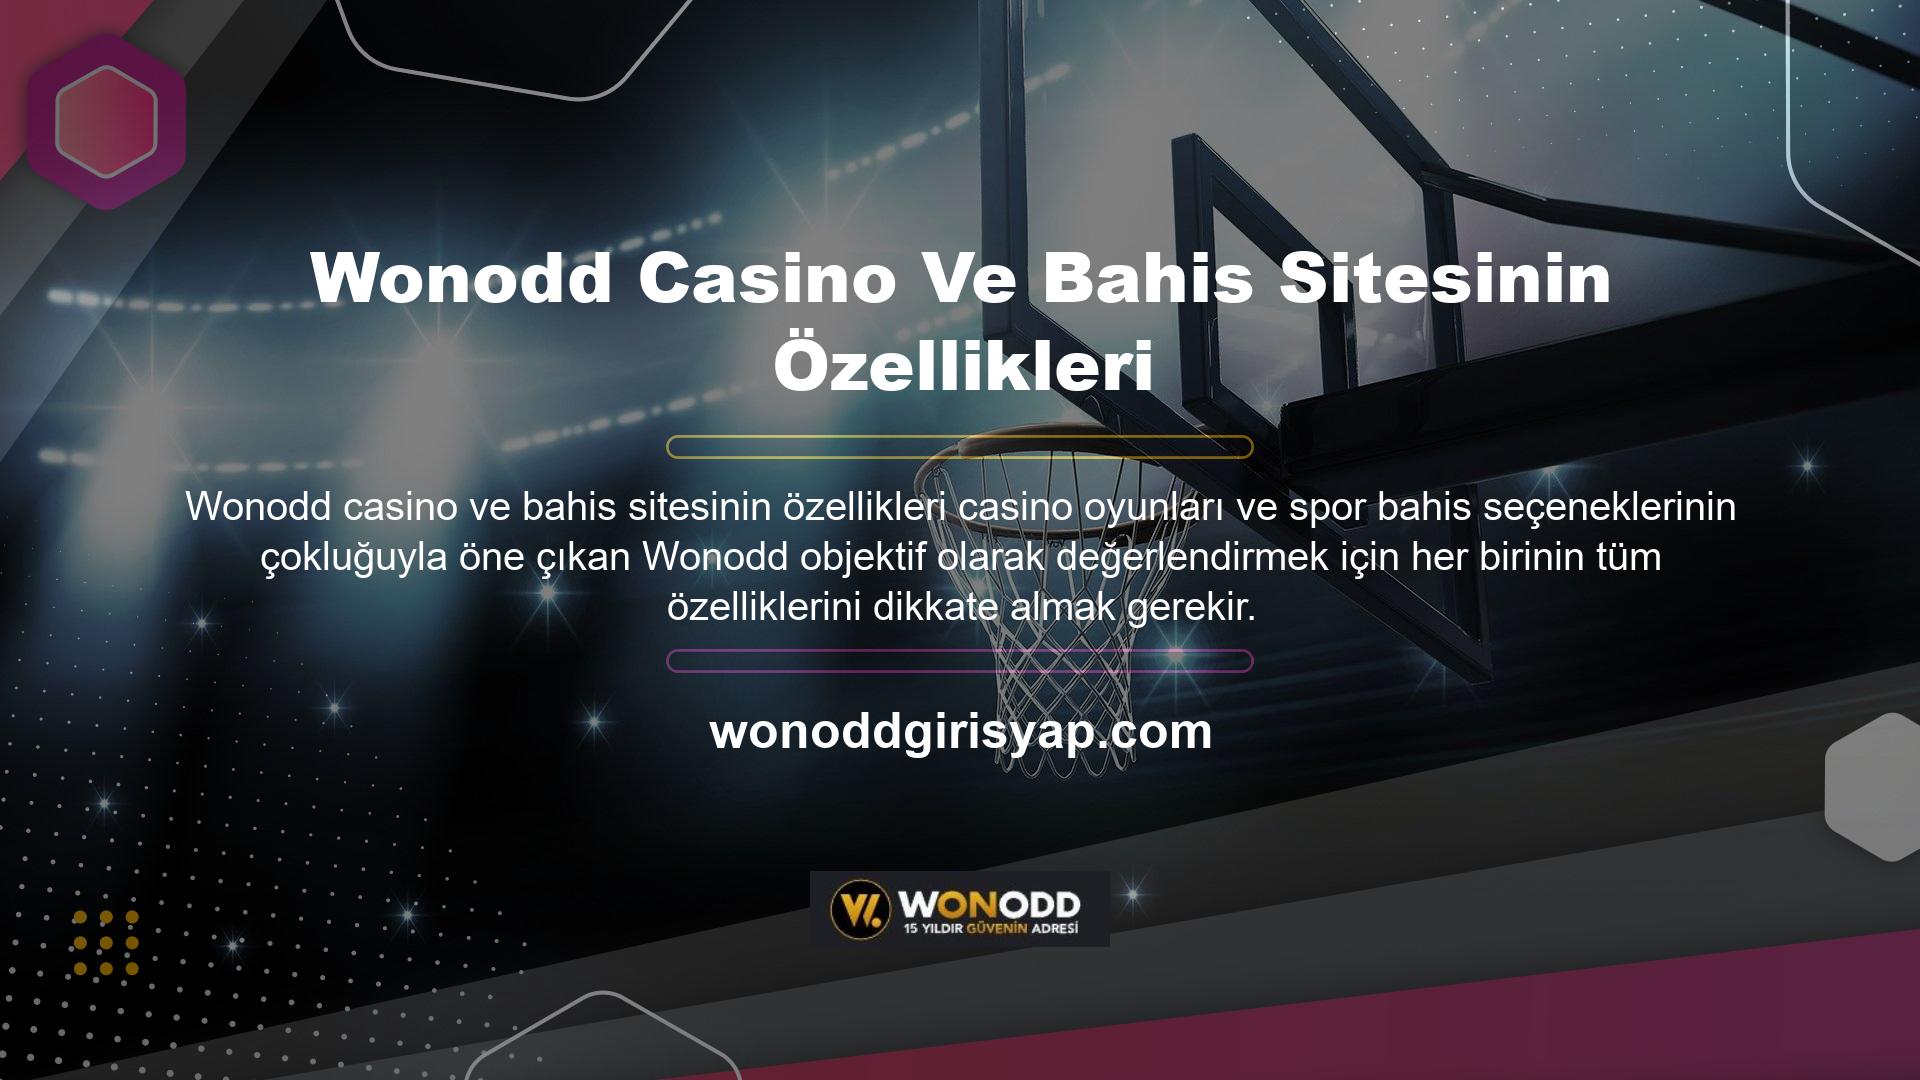 Site, Wonodd Casino ve en yüksek standartlarda tasarlanmış bahis sitesi özellikleriyle kapsamlı bir bonus sistemine sahiptir